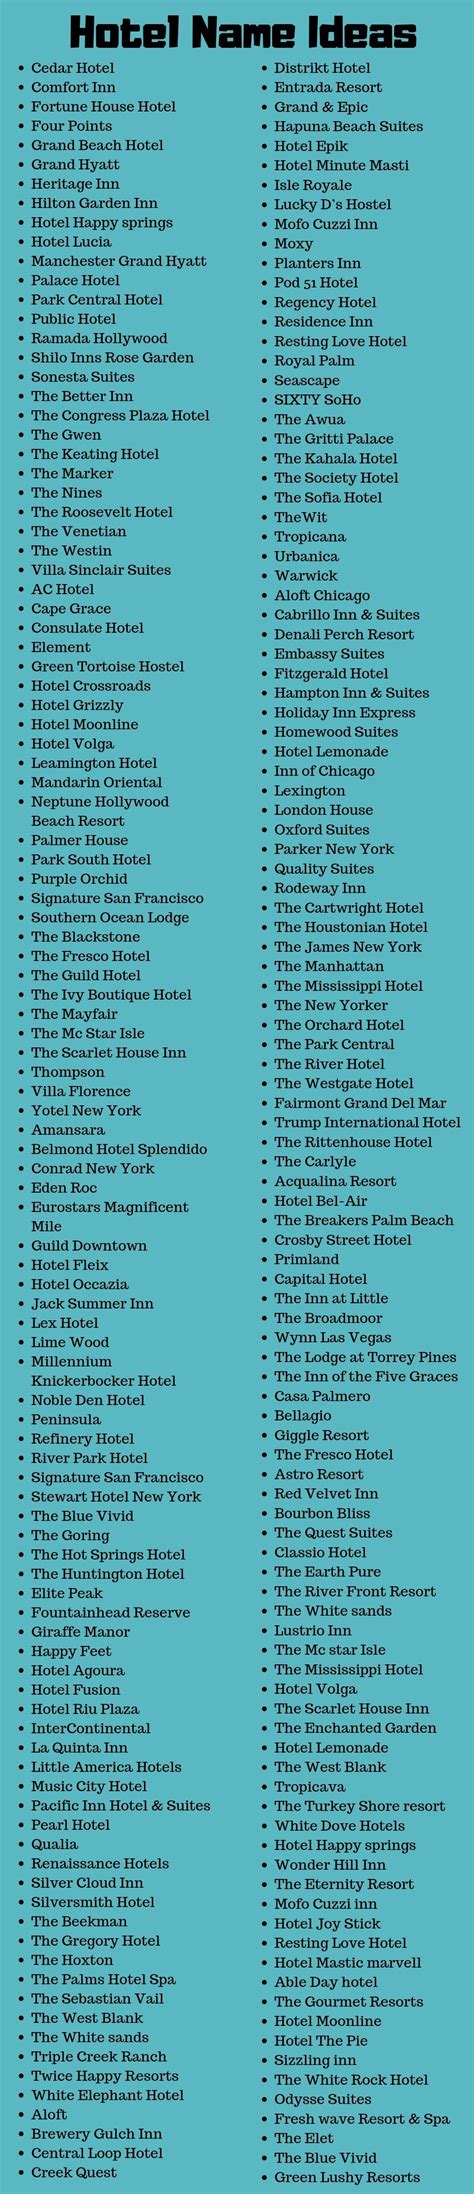 Seasons Restaurant, Restaurant Names, Hotel Restaurant, Restaurant ...